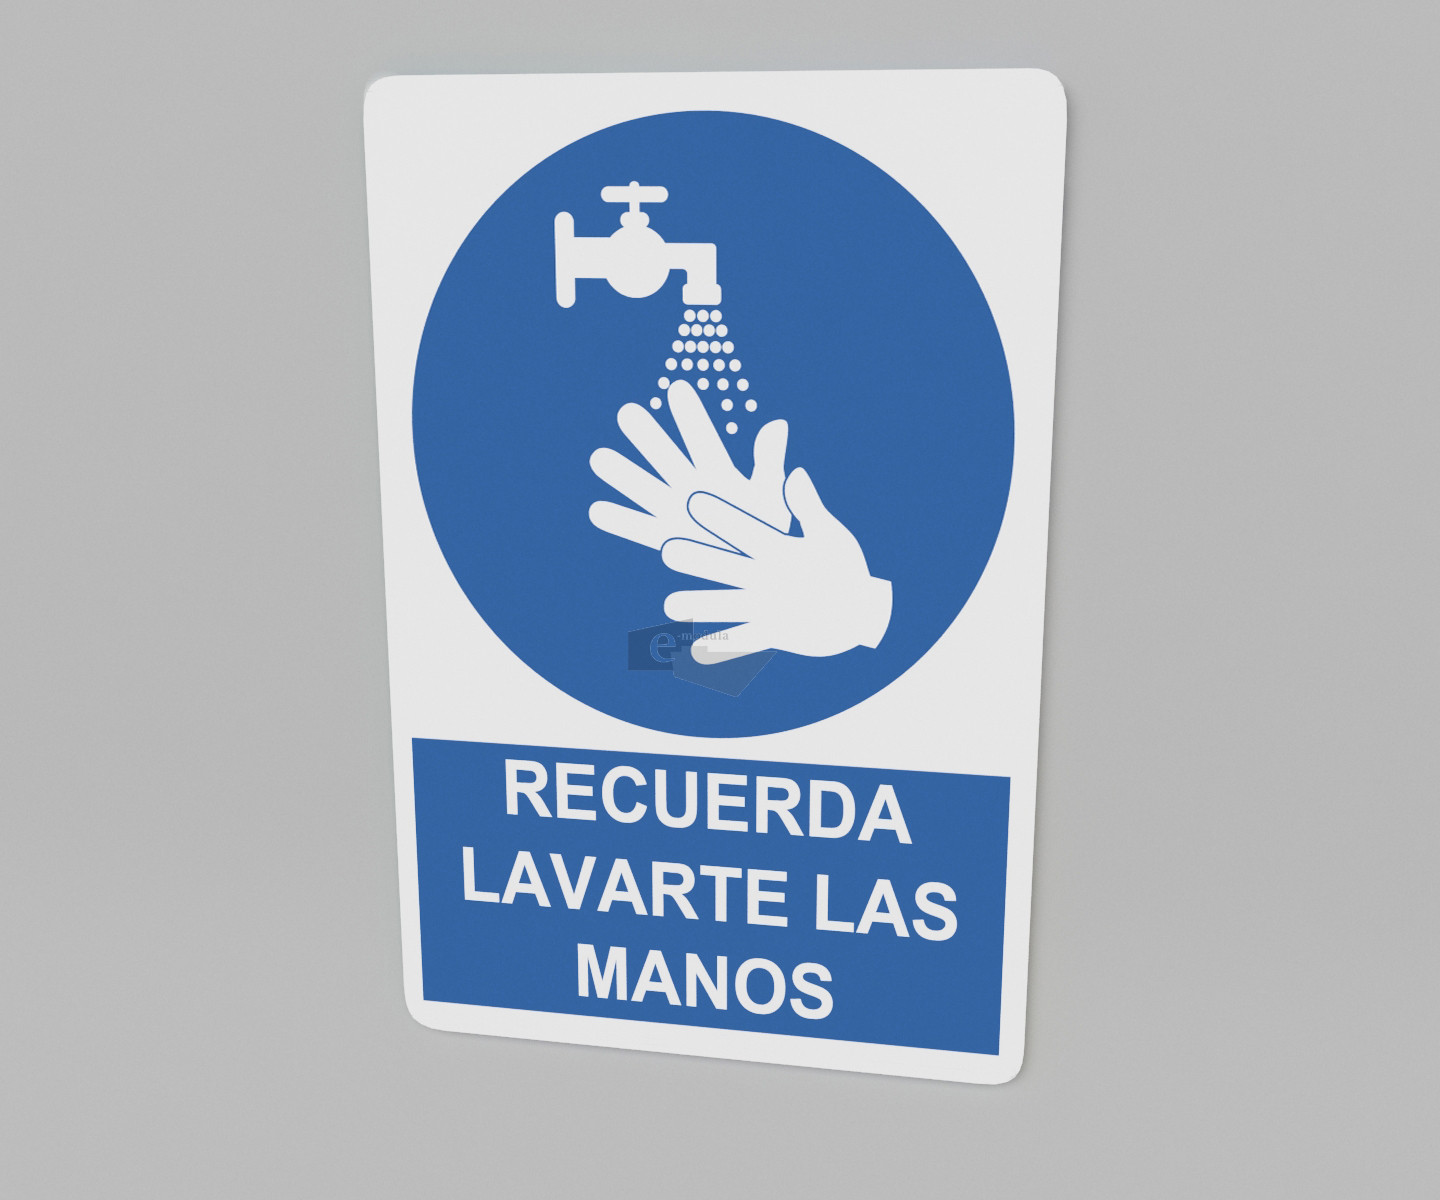 33.33 x 50 cm / recuerda lavarte las manos / señal / letrero / protección civil / azul fondo blanco